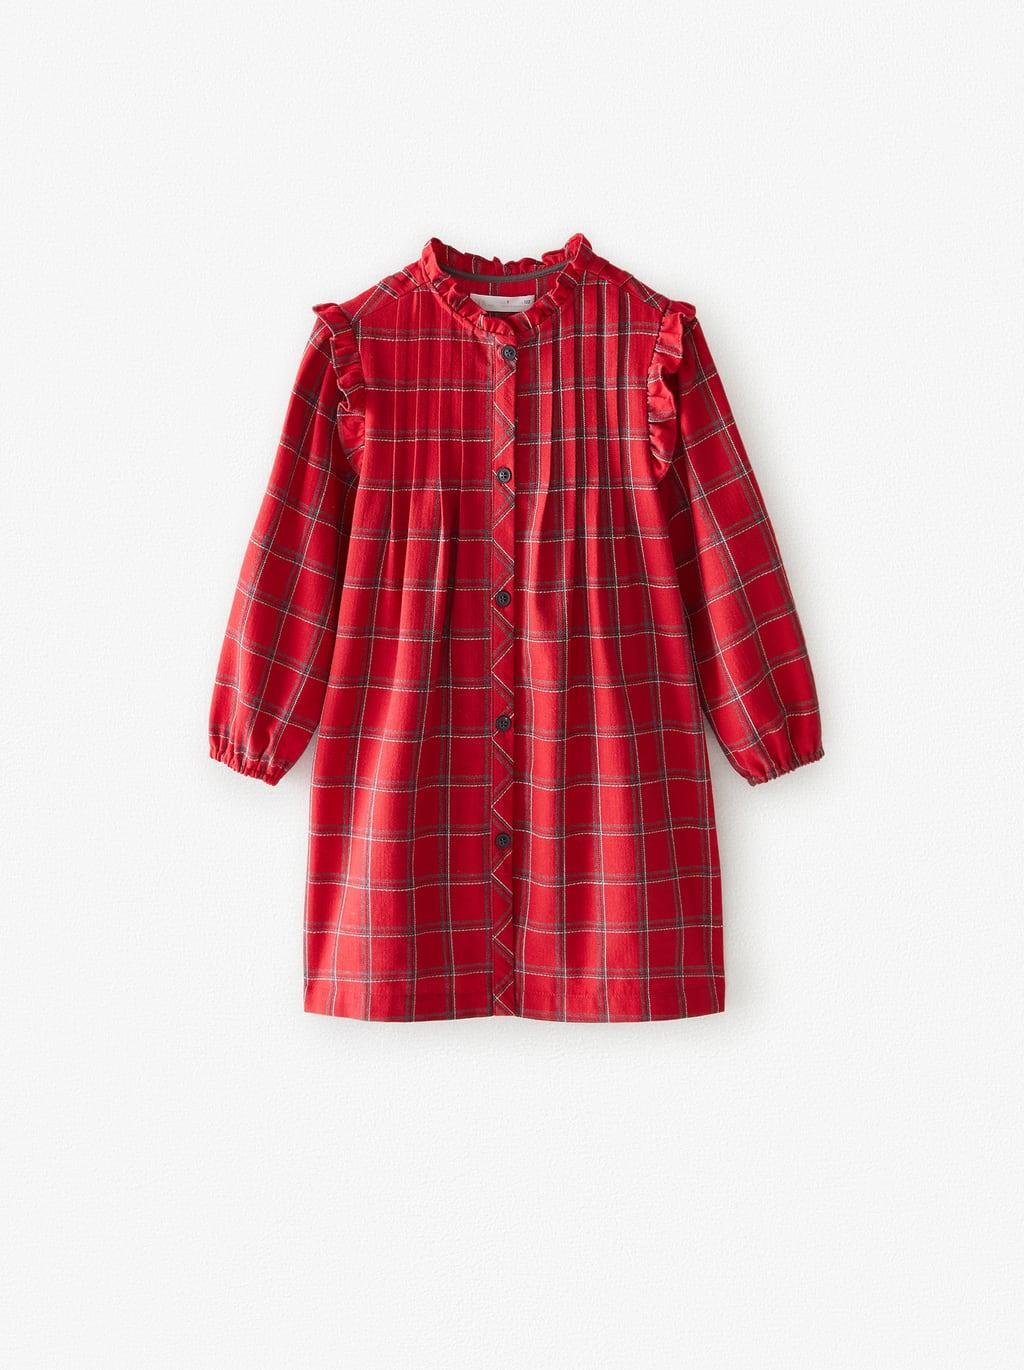 Отзыв на Клетчатая Рубашка платье из Интернет-Магазина Zara